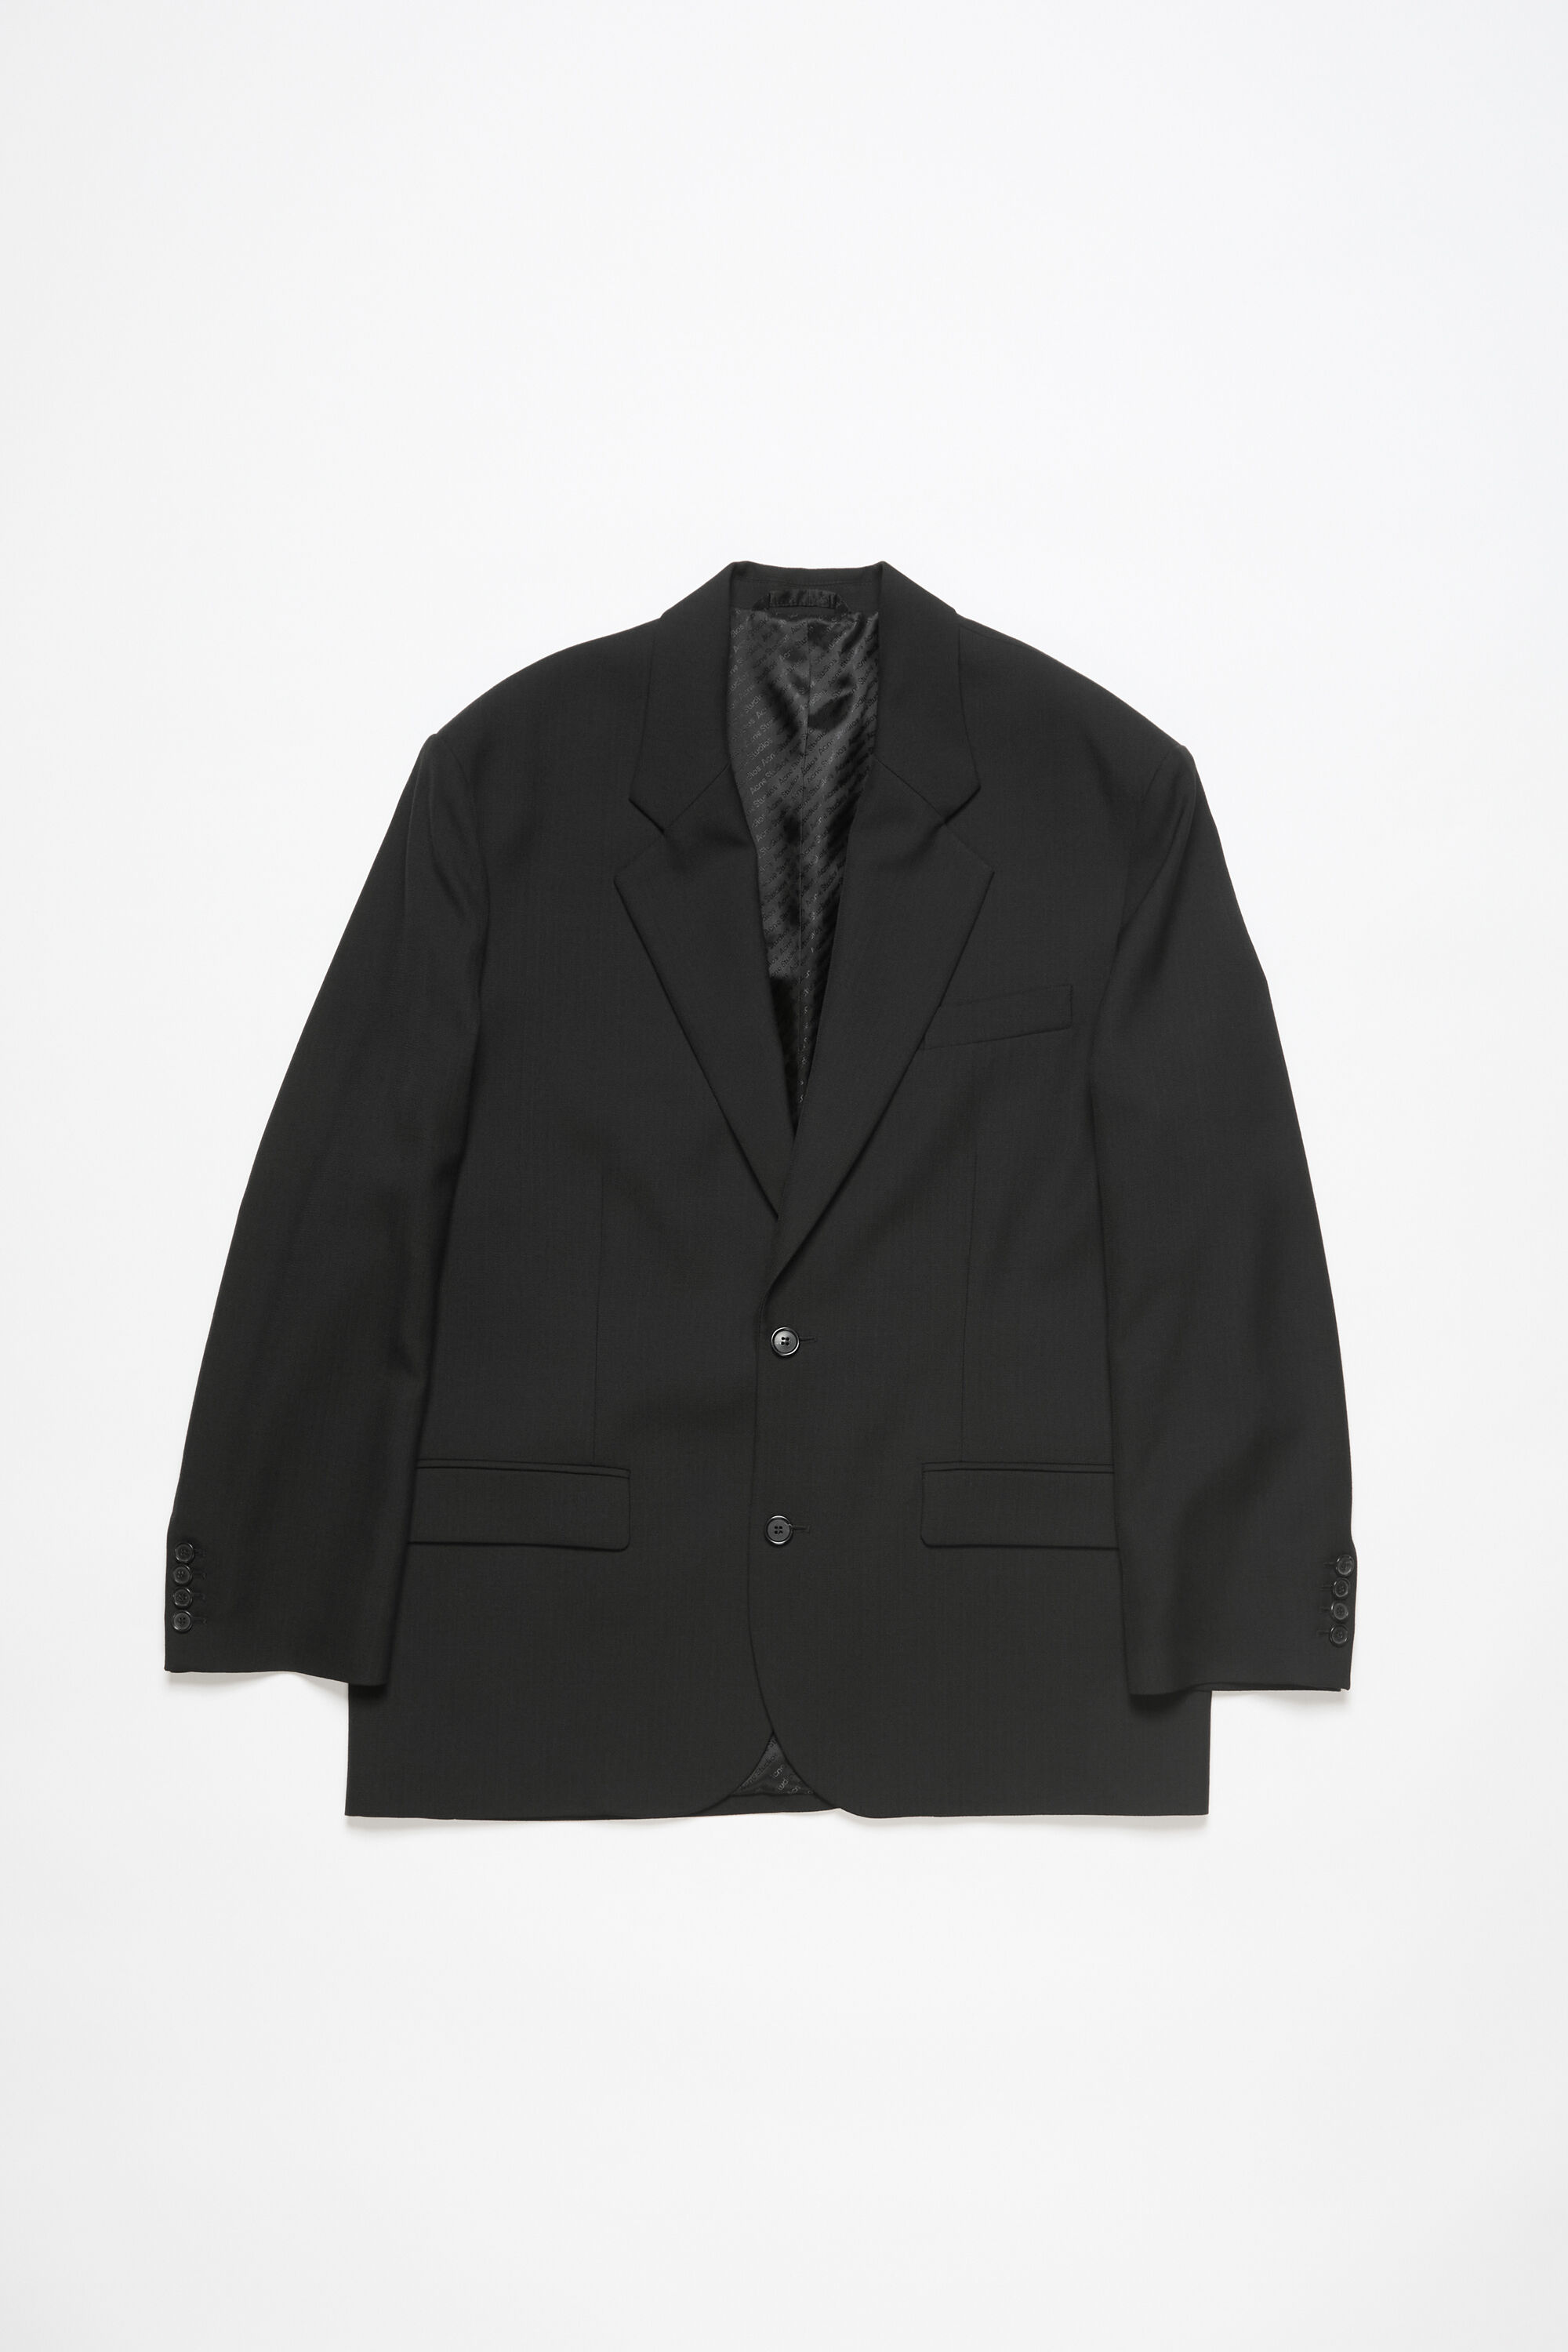 Acne Studios – Men's Suit Jackets